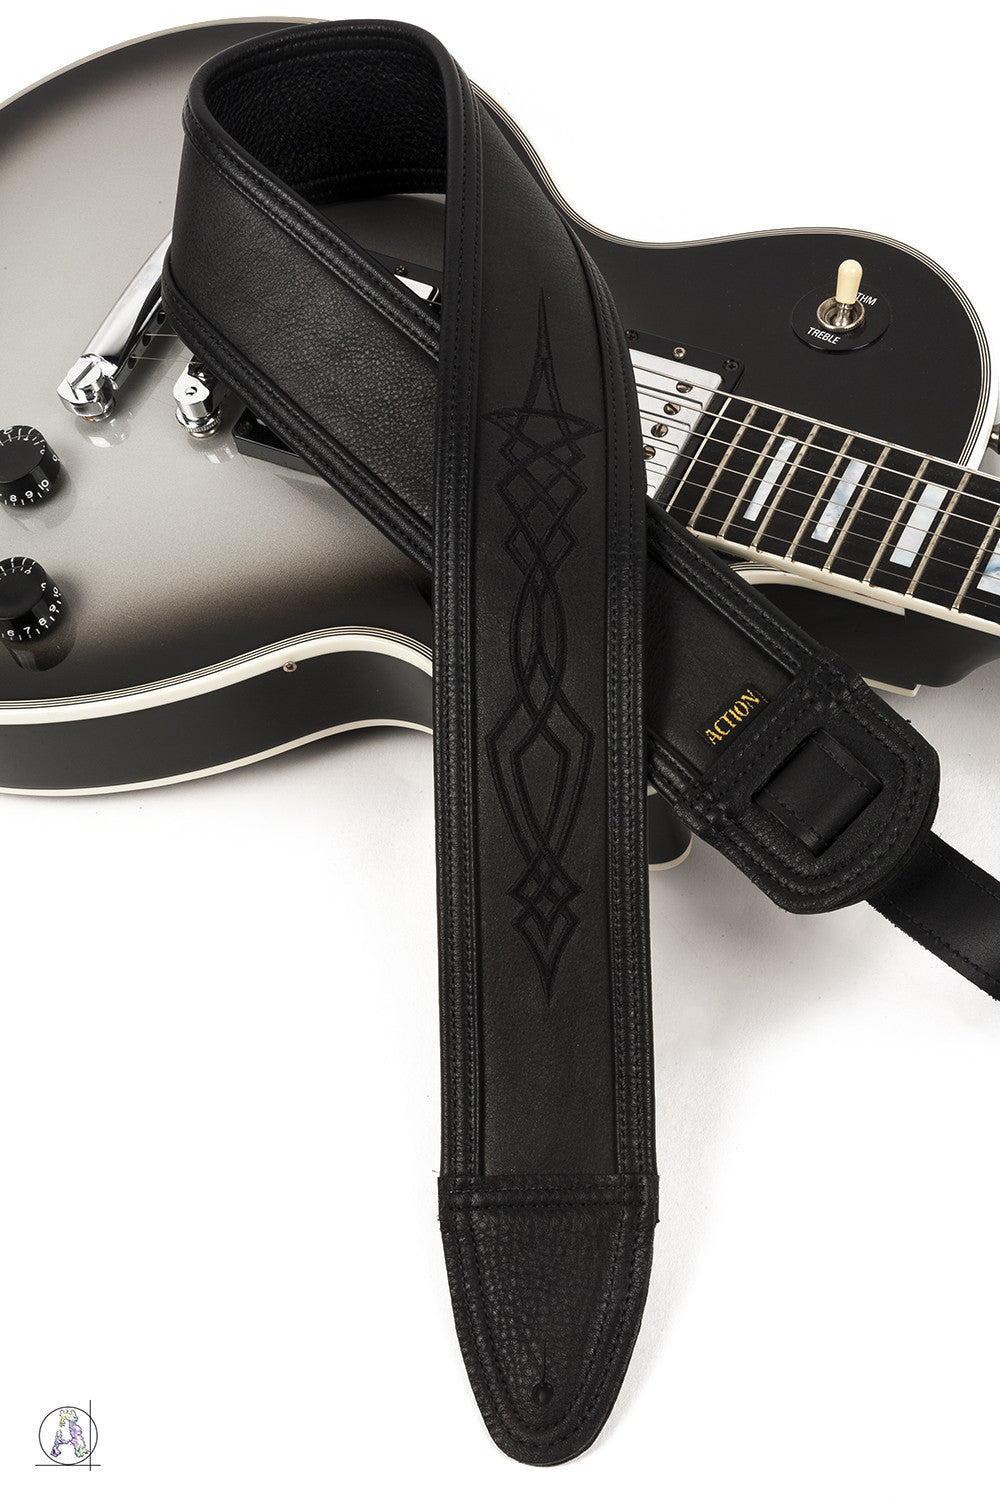 Artist GSLBK Black Adjustable Leather Guitar StrapGSLBK